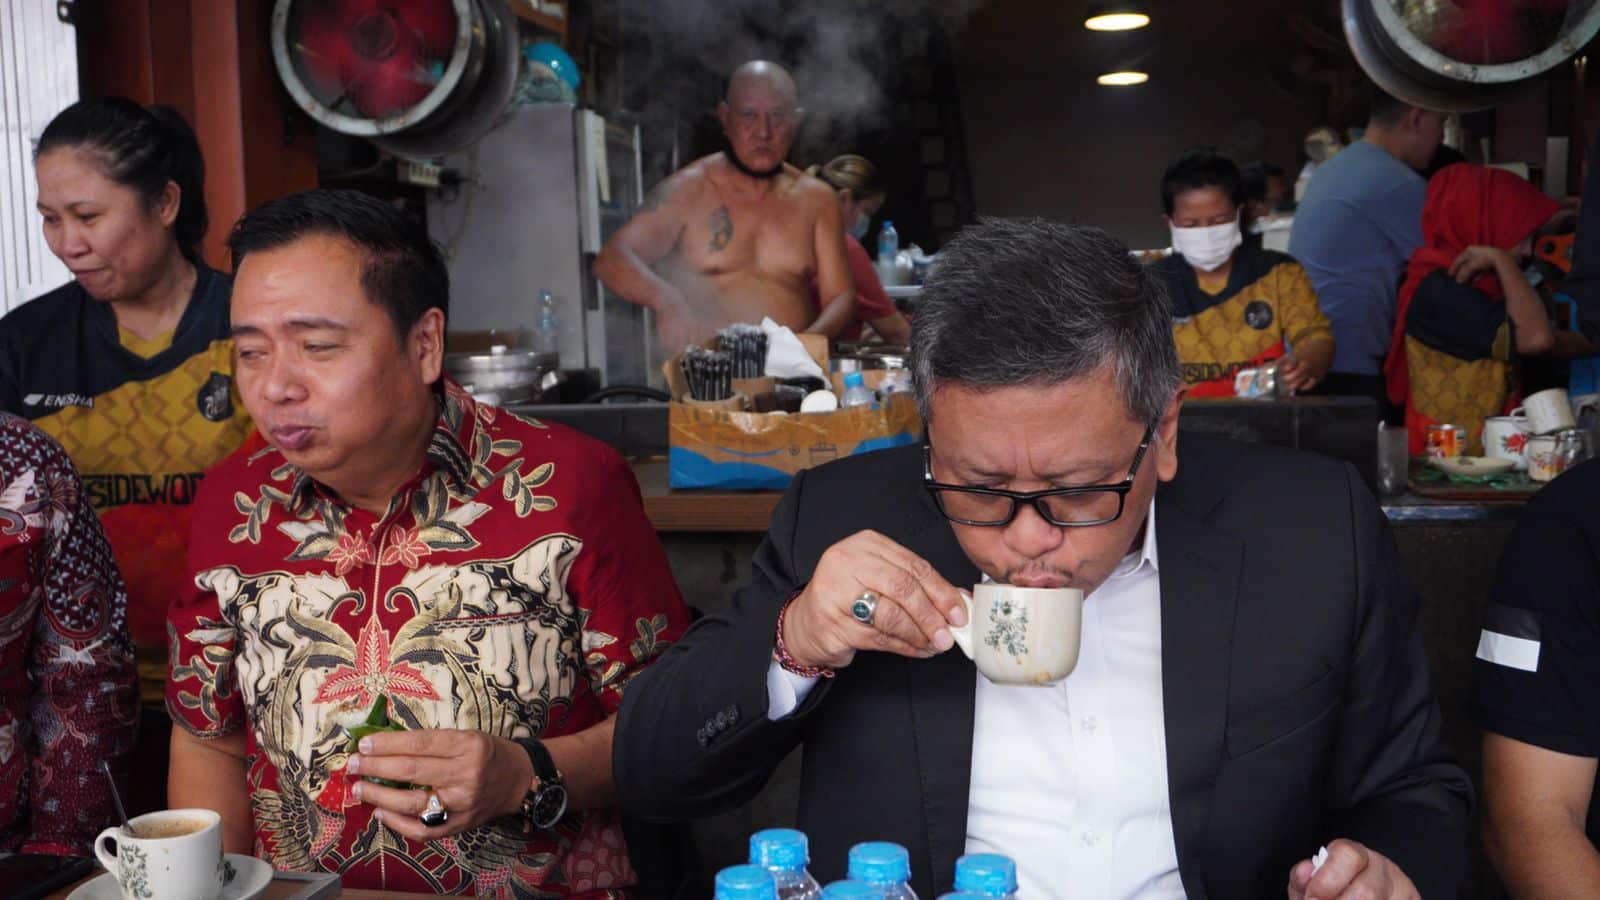 Sekretaris Jenderal PDI Perjuangan, Hasto Kristiyanto mengawali kunjungannya ke Kalimantan Barat dengan menyeruput kopi di Warkop Asiang Pontianak, pada pukul 08.45 Wib, hari Jumat (26/08/2022). (Foto: Istimewa)